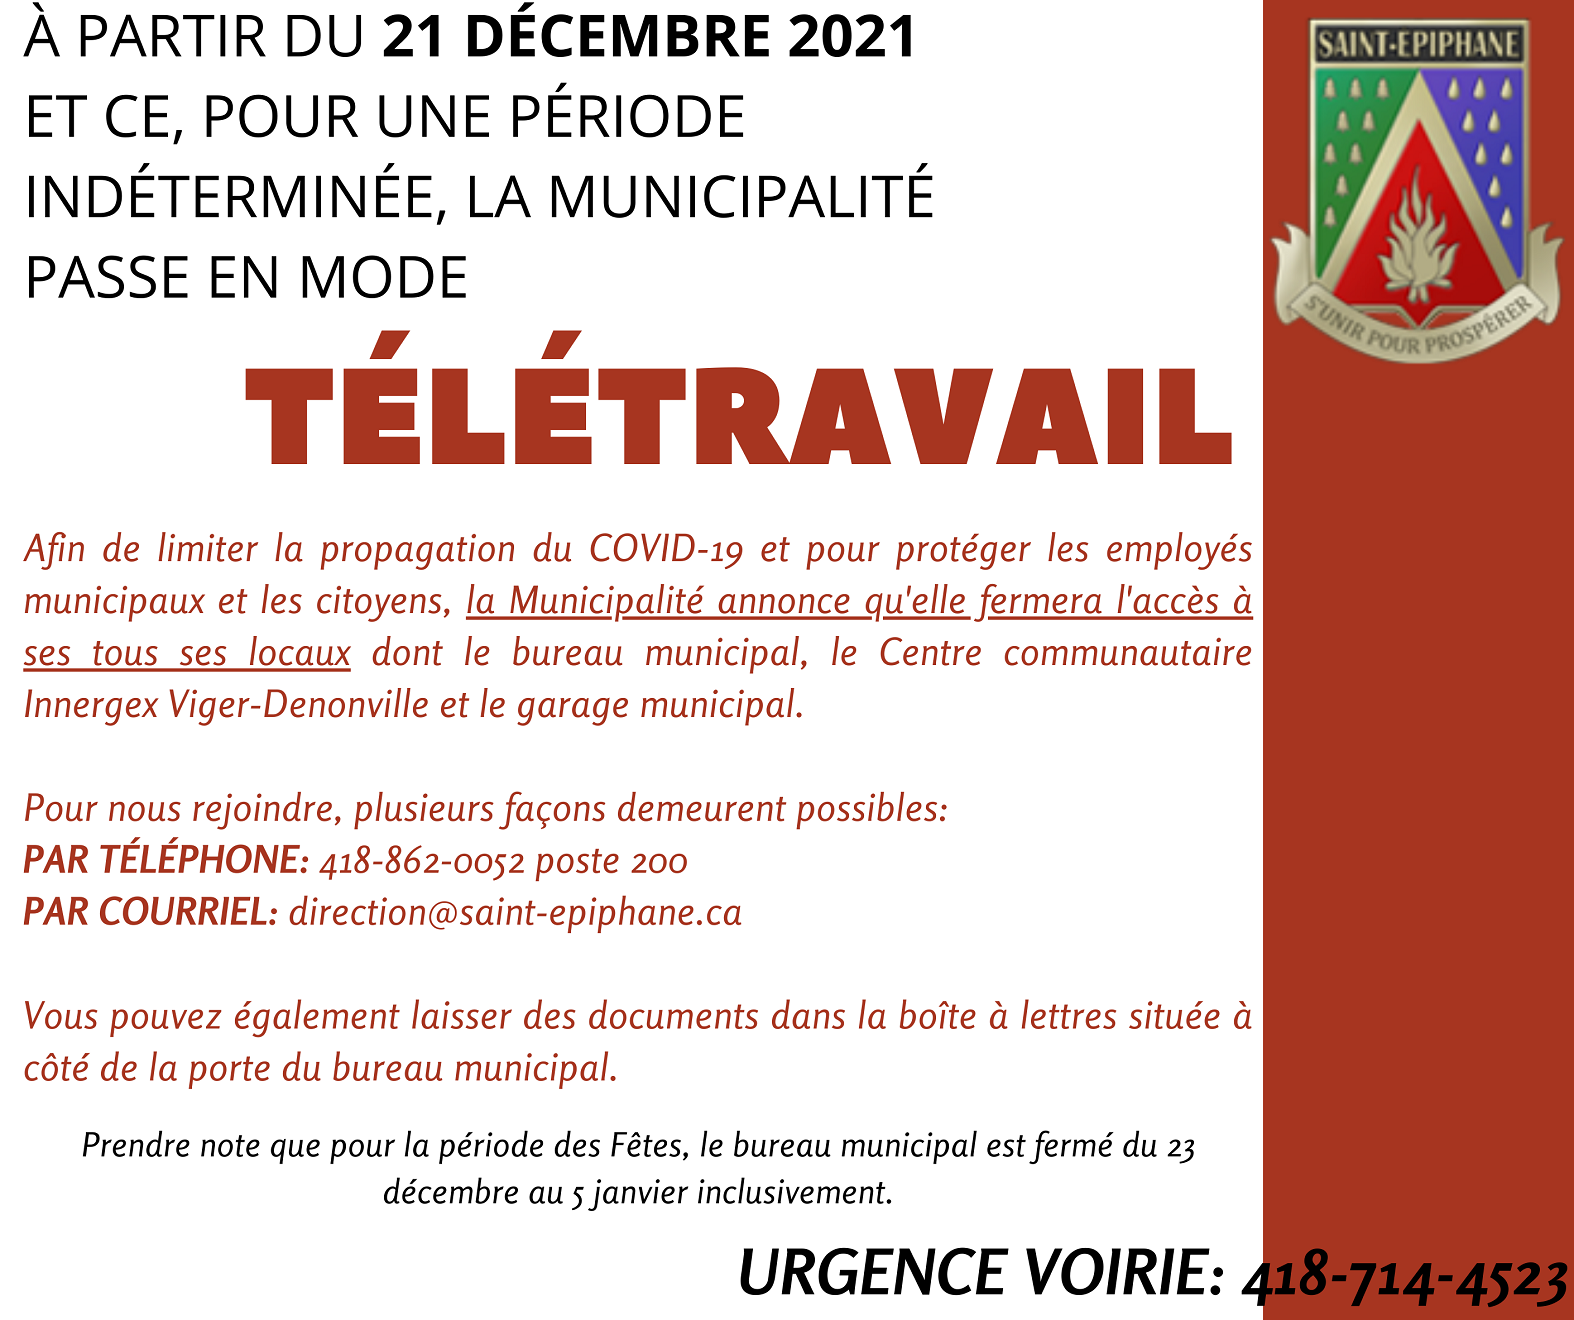 Avis public - La Municipalité passe en mode télétravail à compter du 21 décembre 2021 (Auteur : Direction générale )